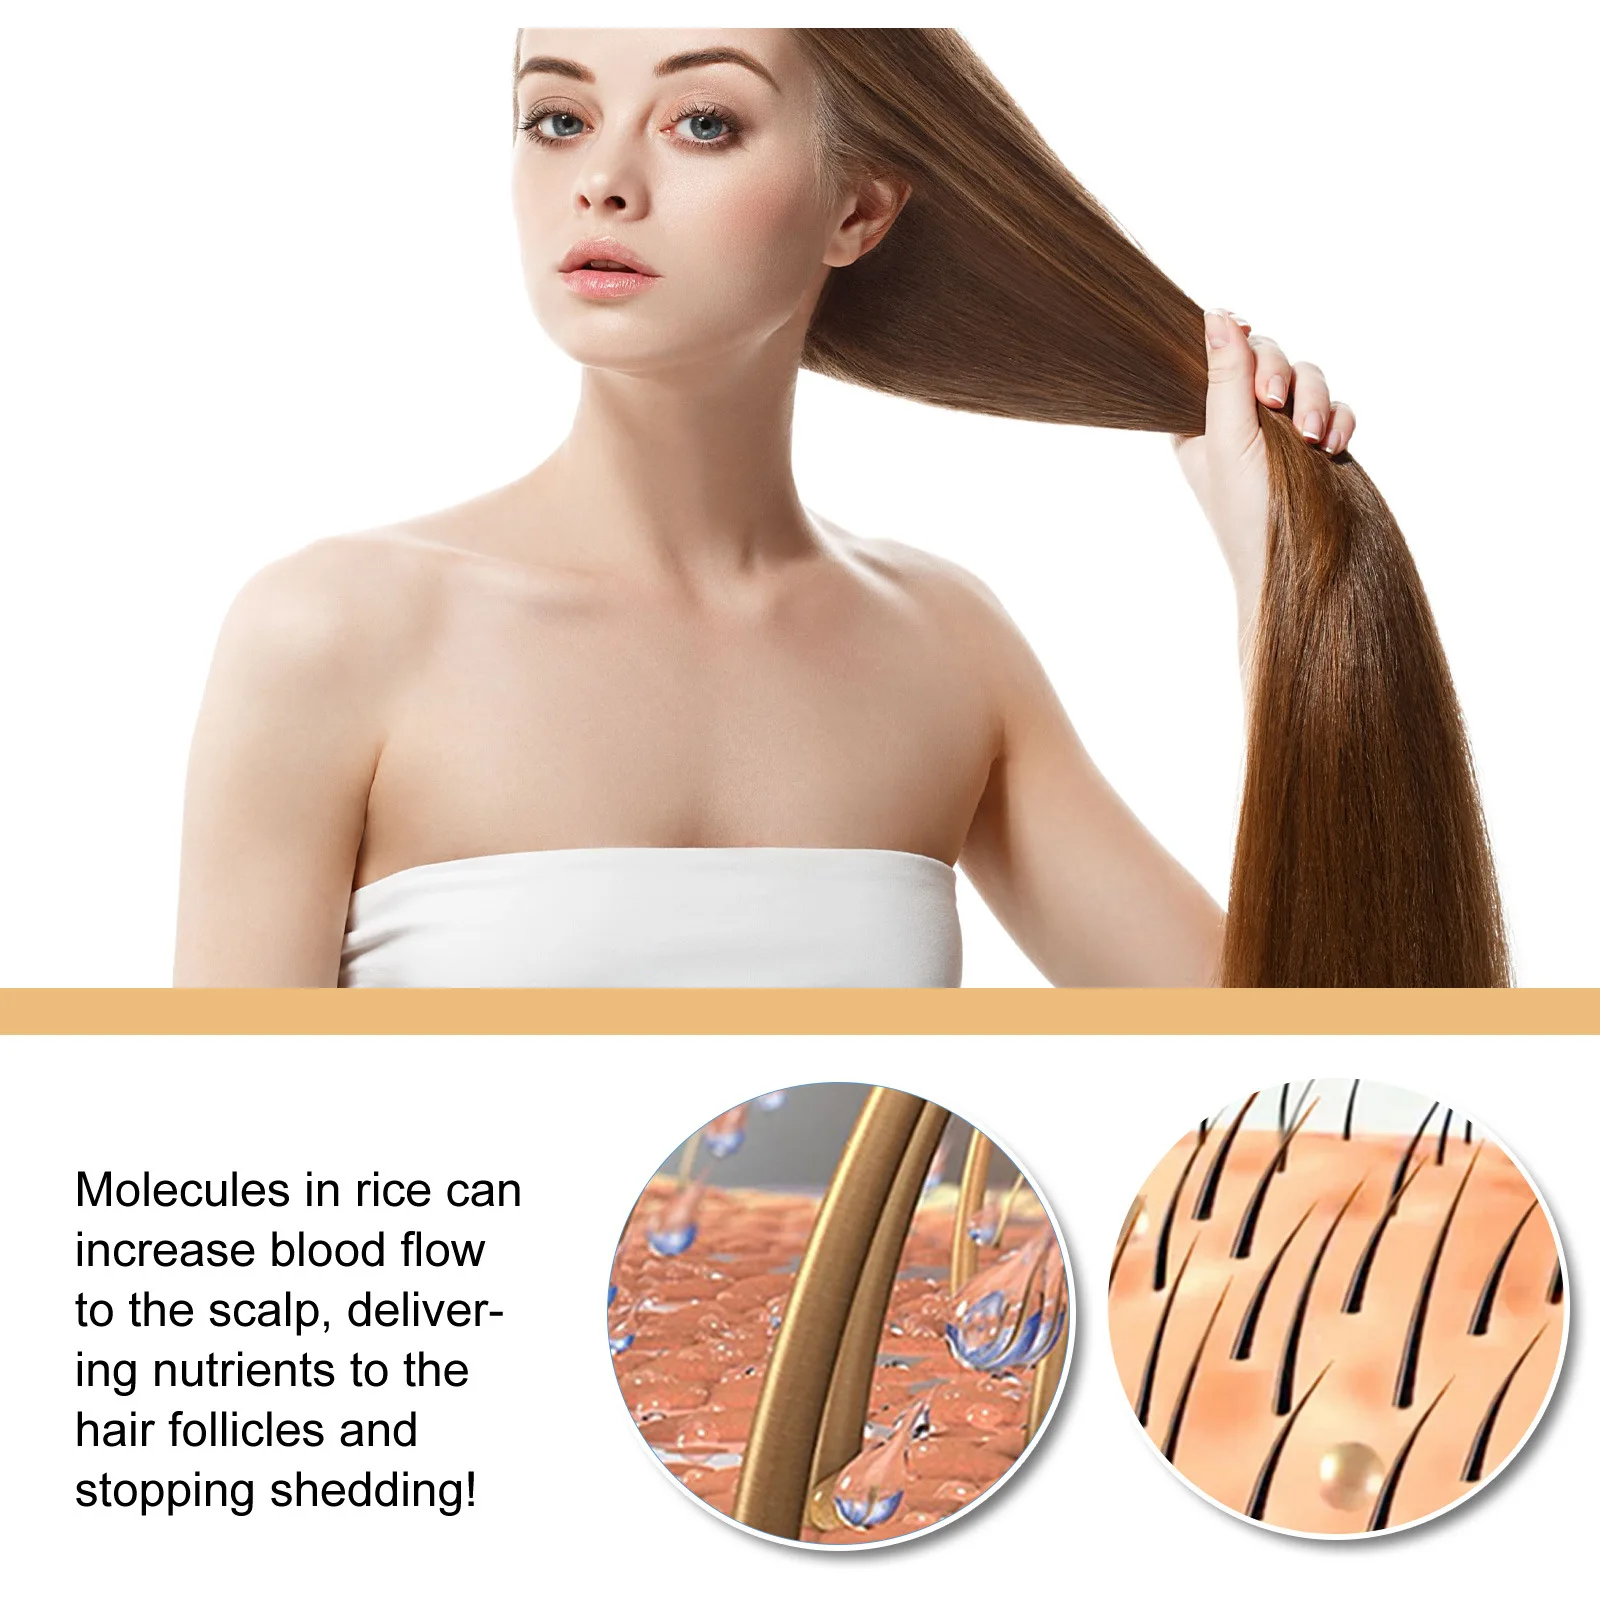 אורז נגד אובדן שמפו סבון להזין שיפור התקרחות לצמיחה מחודשת שיער הסרת קשקשים לחות השיער שמפו טיפולי - 3